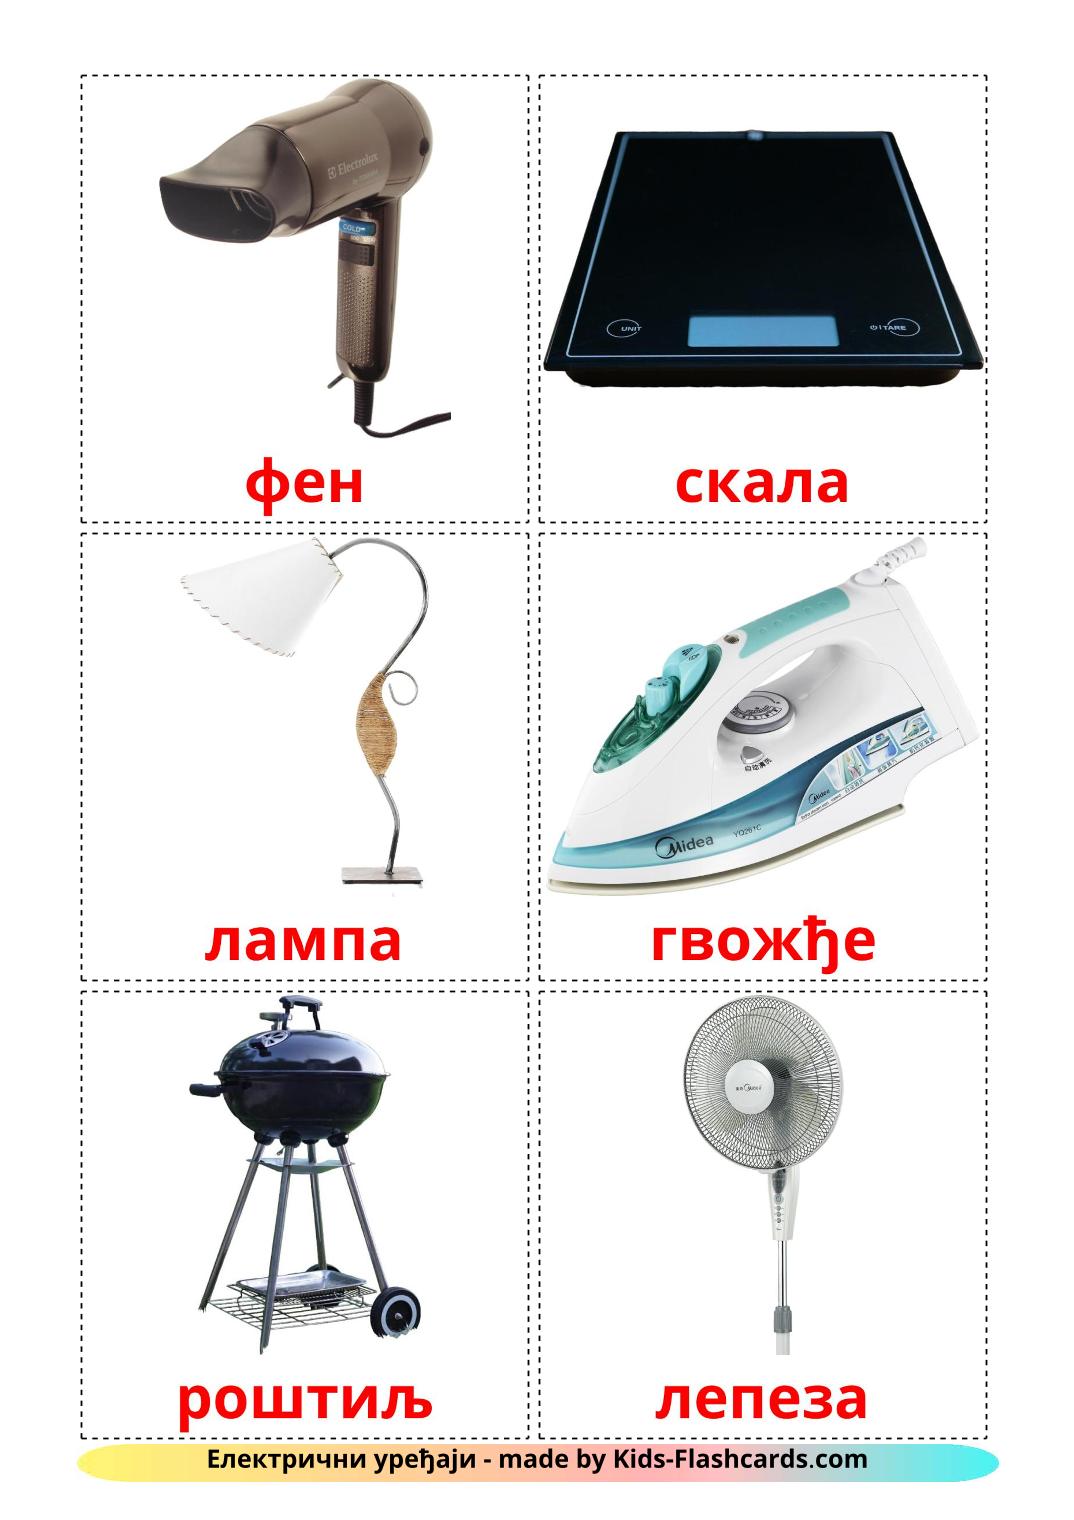 Électronique - 32 Flashcards serbe(cyrillique) imprimables gratuitement